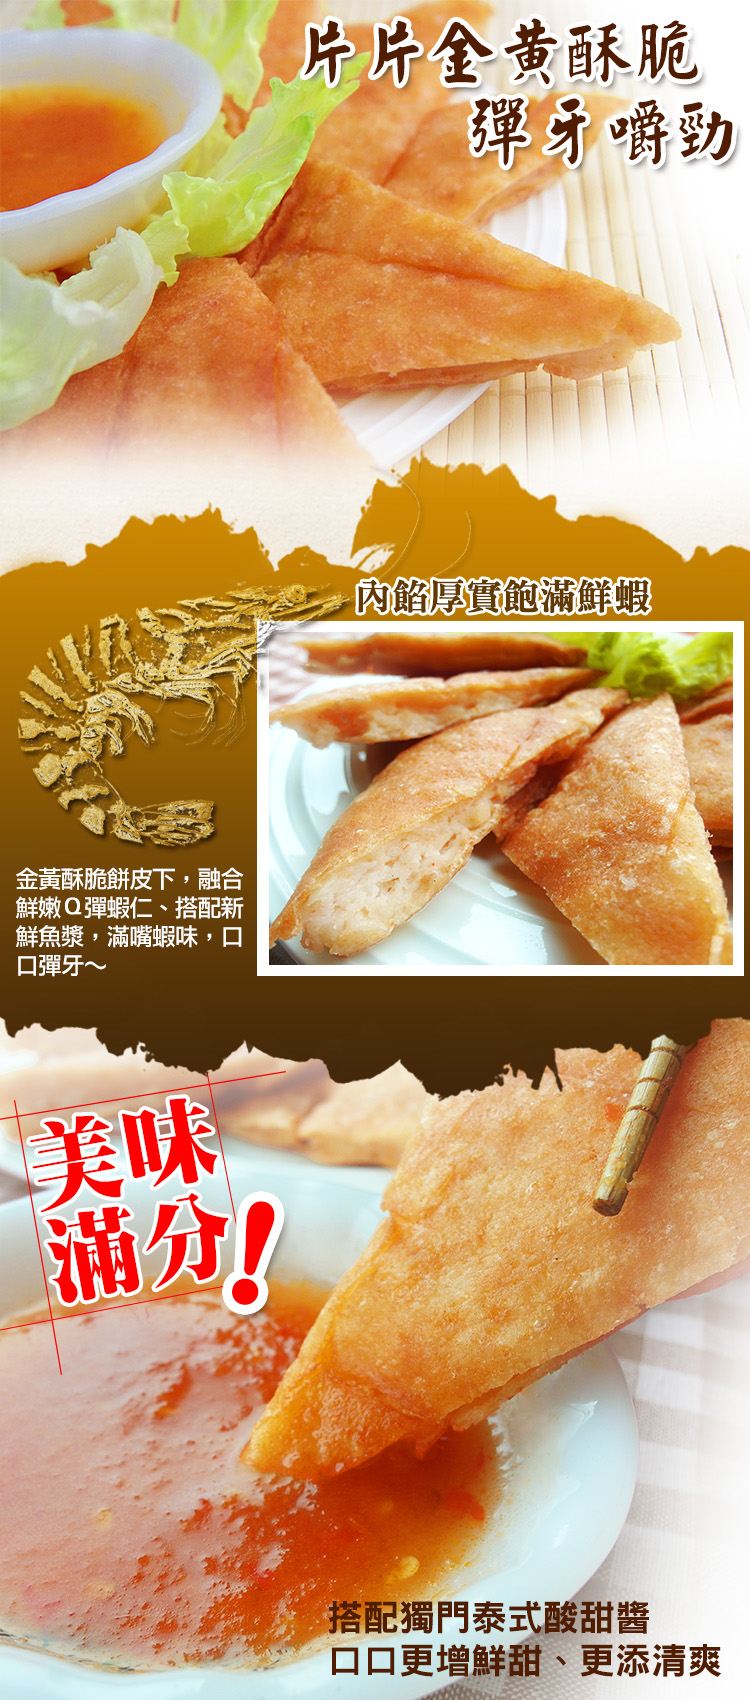 (團購組) 食吧嚴選 泰式黃金月亮蝦餅 10片組( 200g±10%/片 )-附泰式酸甜醬